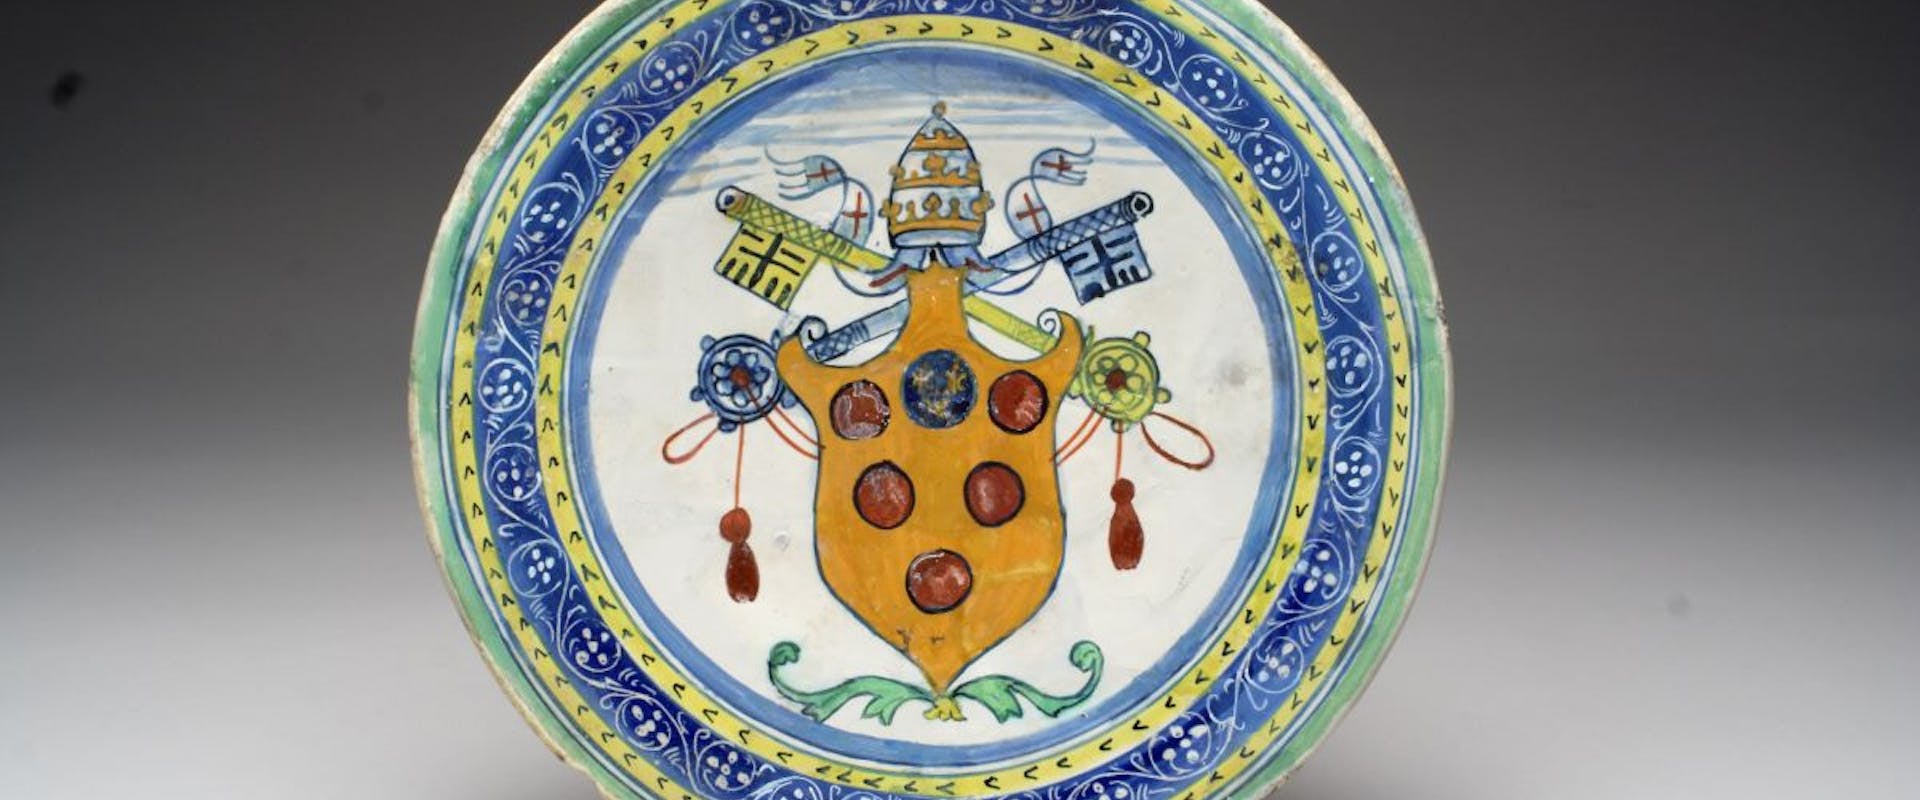 La ceramica di Montelupo e gli Uffizi. Una galleria di confronti